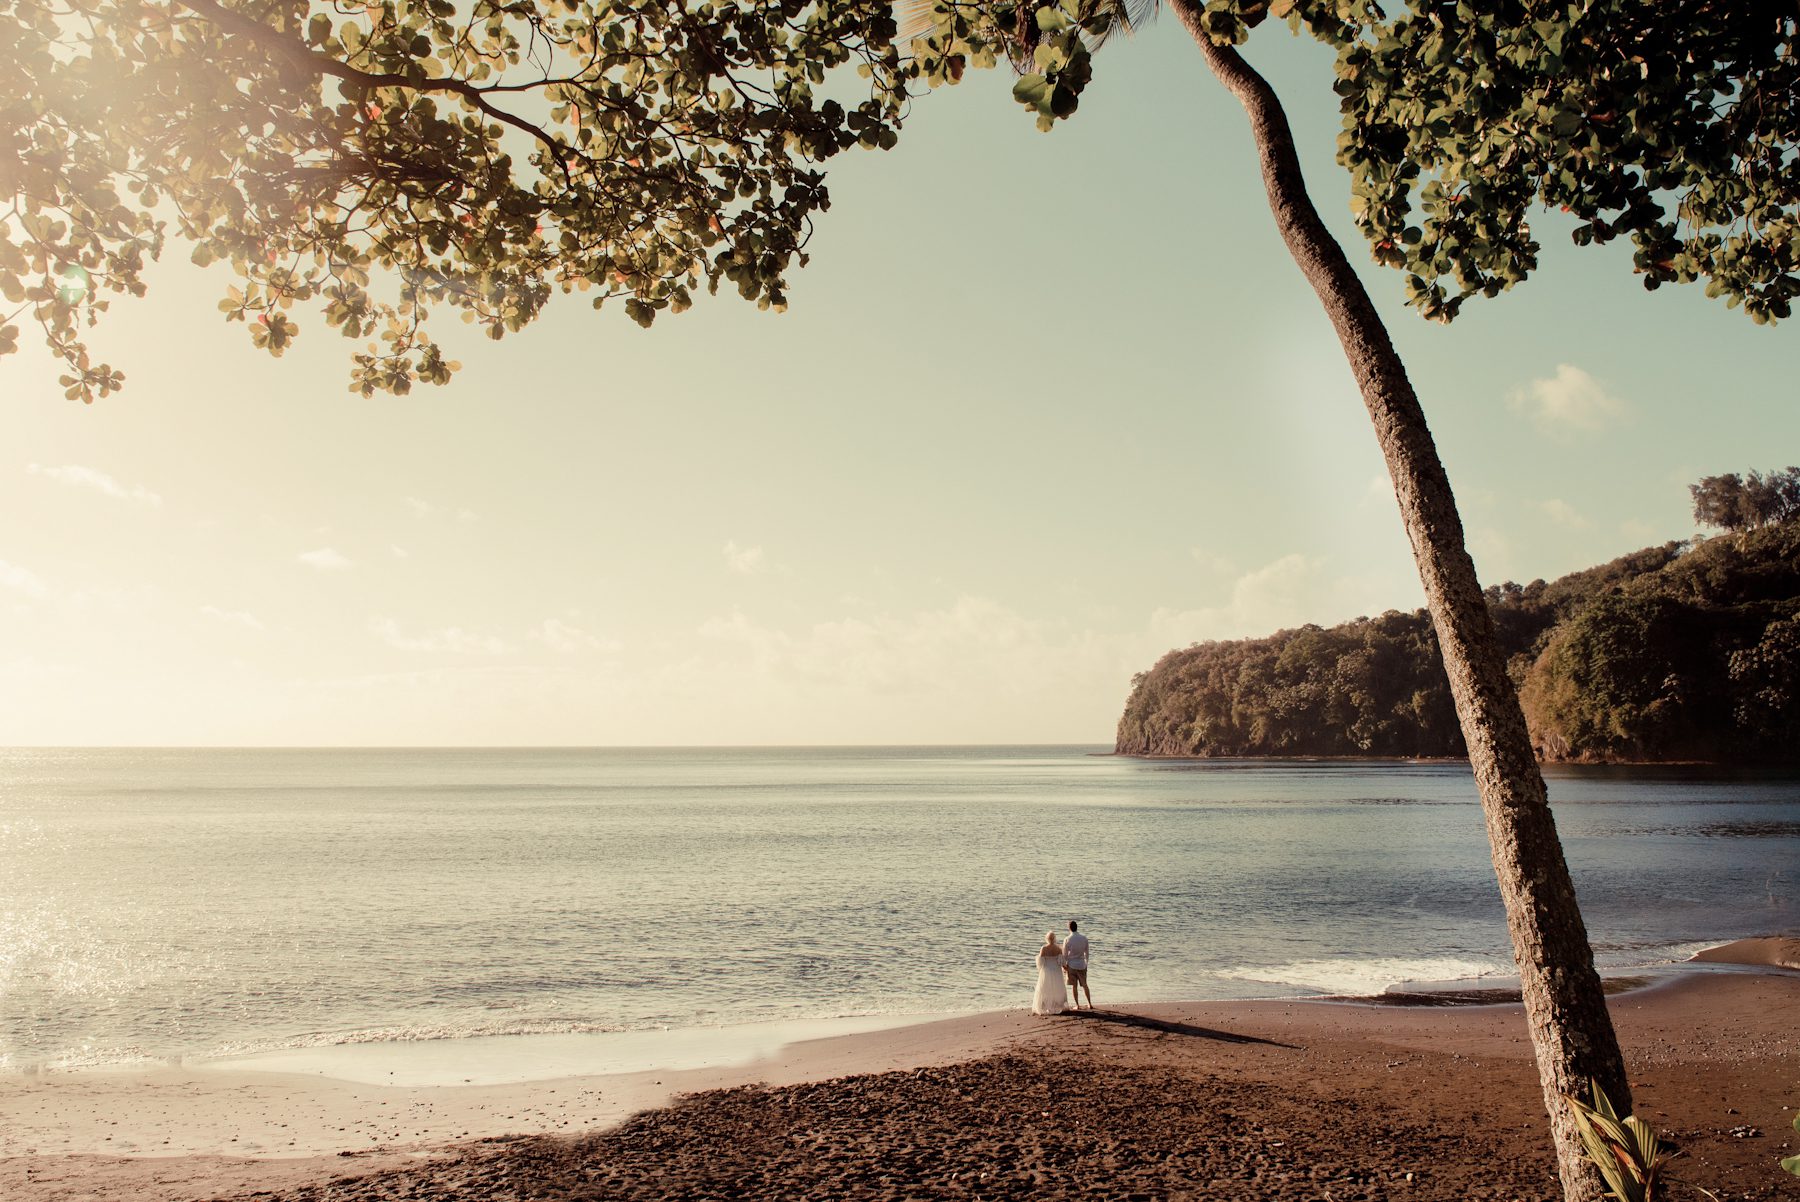 Photoshooting around the island of Tahiti